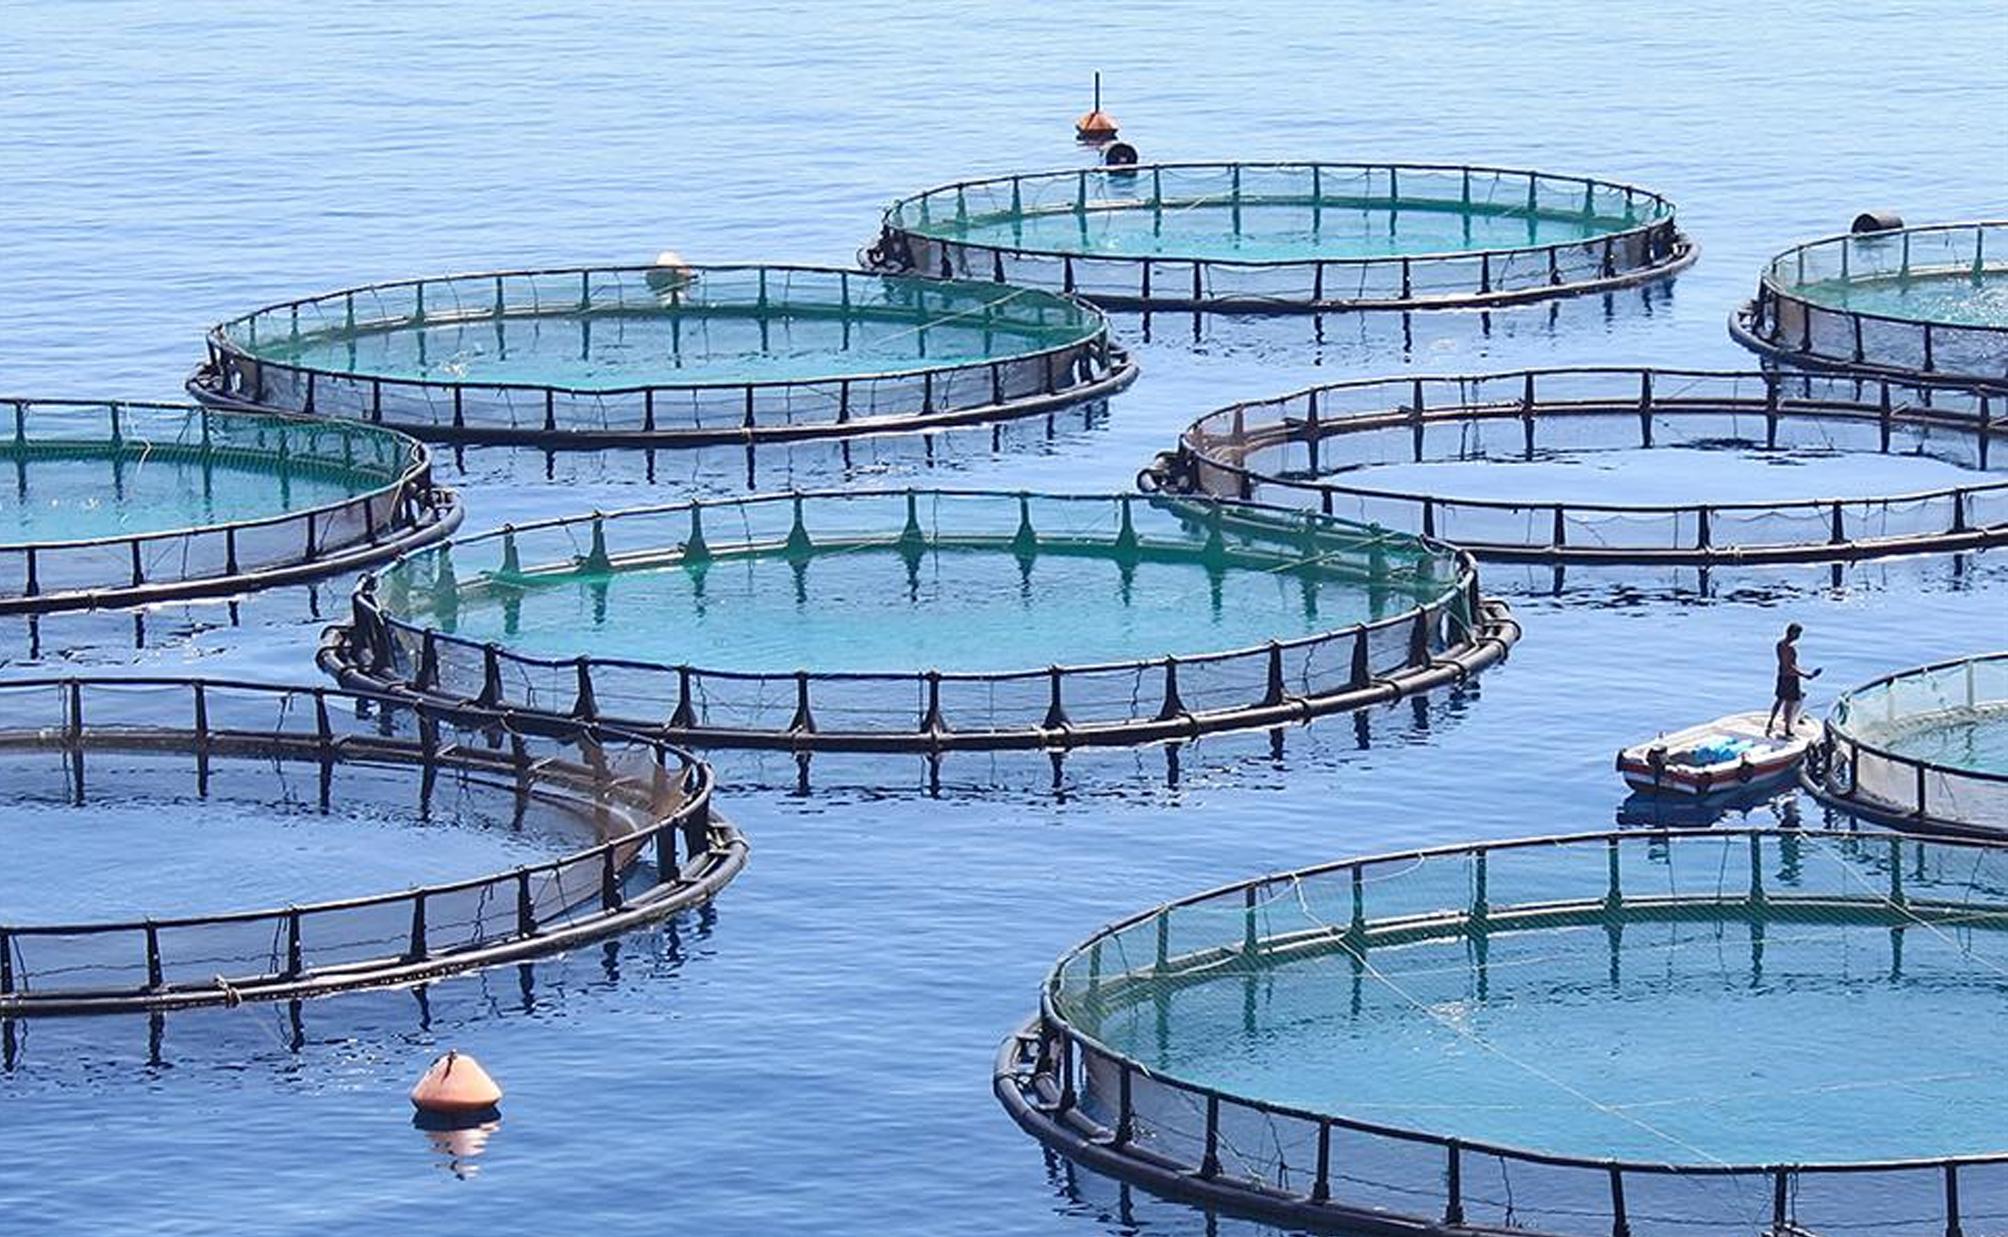 واگذاری 6 مجوز تاسیس مزرعه دریایی پرورش ماهی در سواحل سوریه